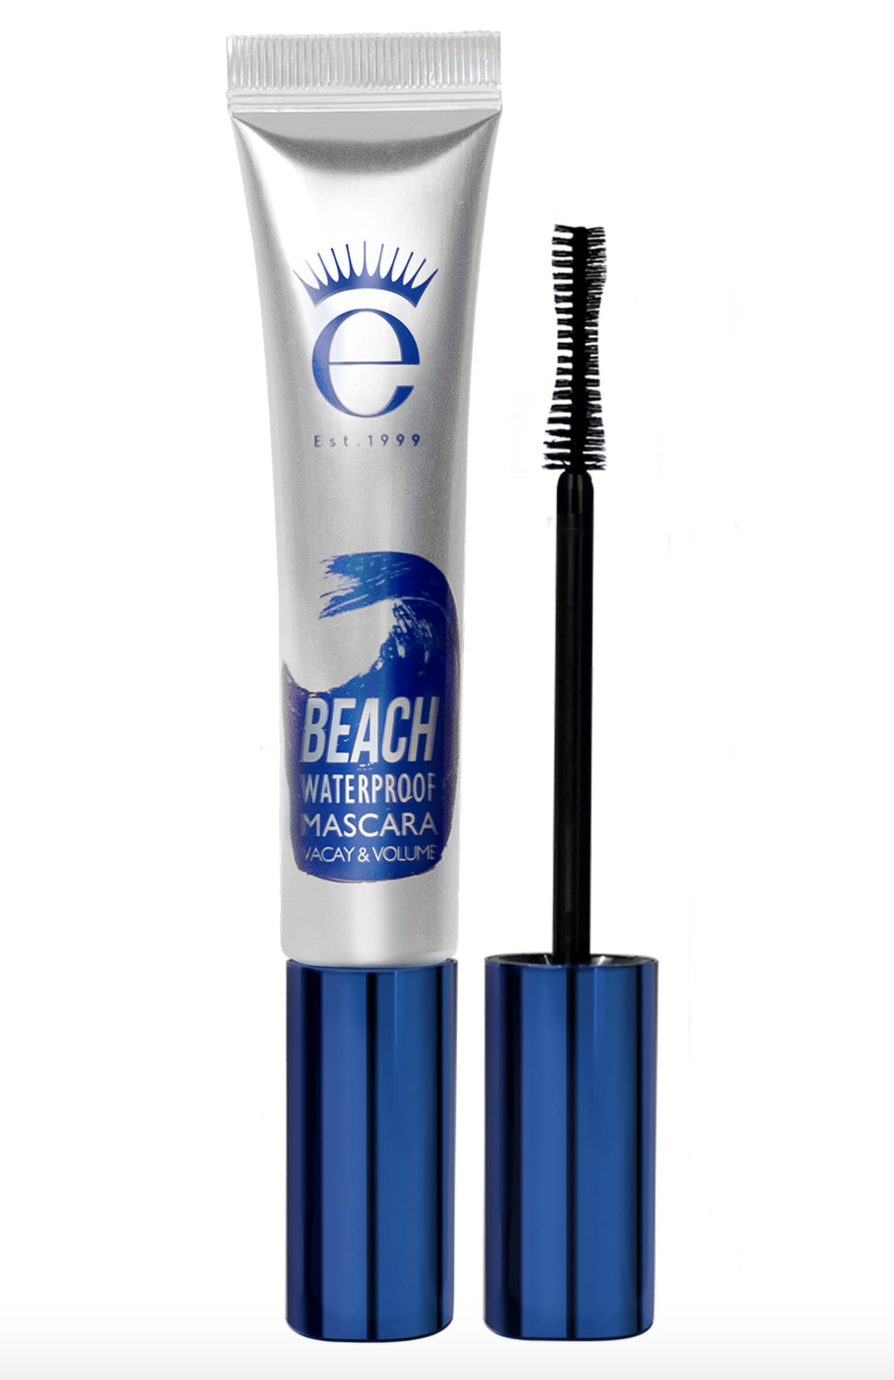 Eyeko beach waterproof mascara in black